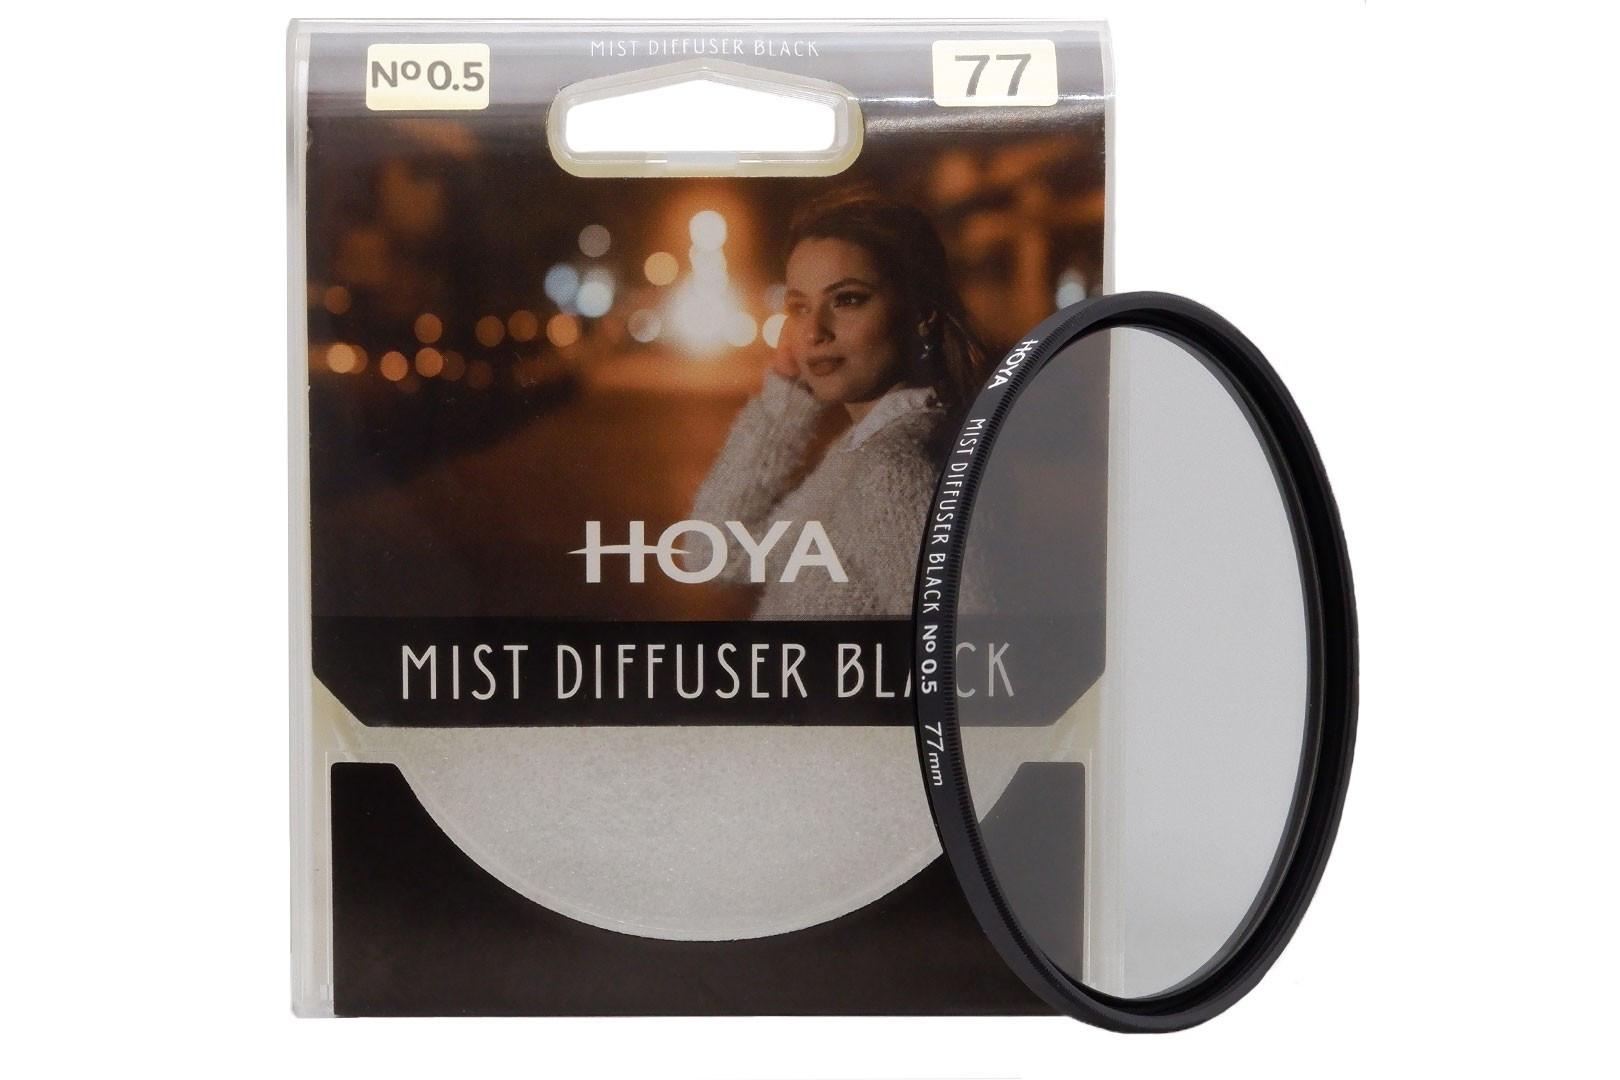 Hoya  Hoya Y505303 filtre pour appareils photo Filtre de caméra de diffusion 5,8 cm 